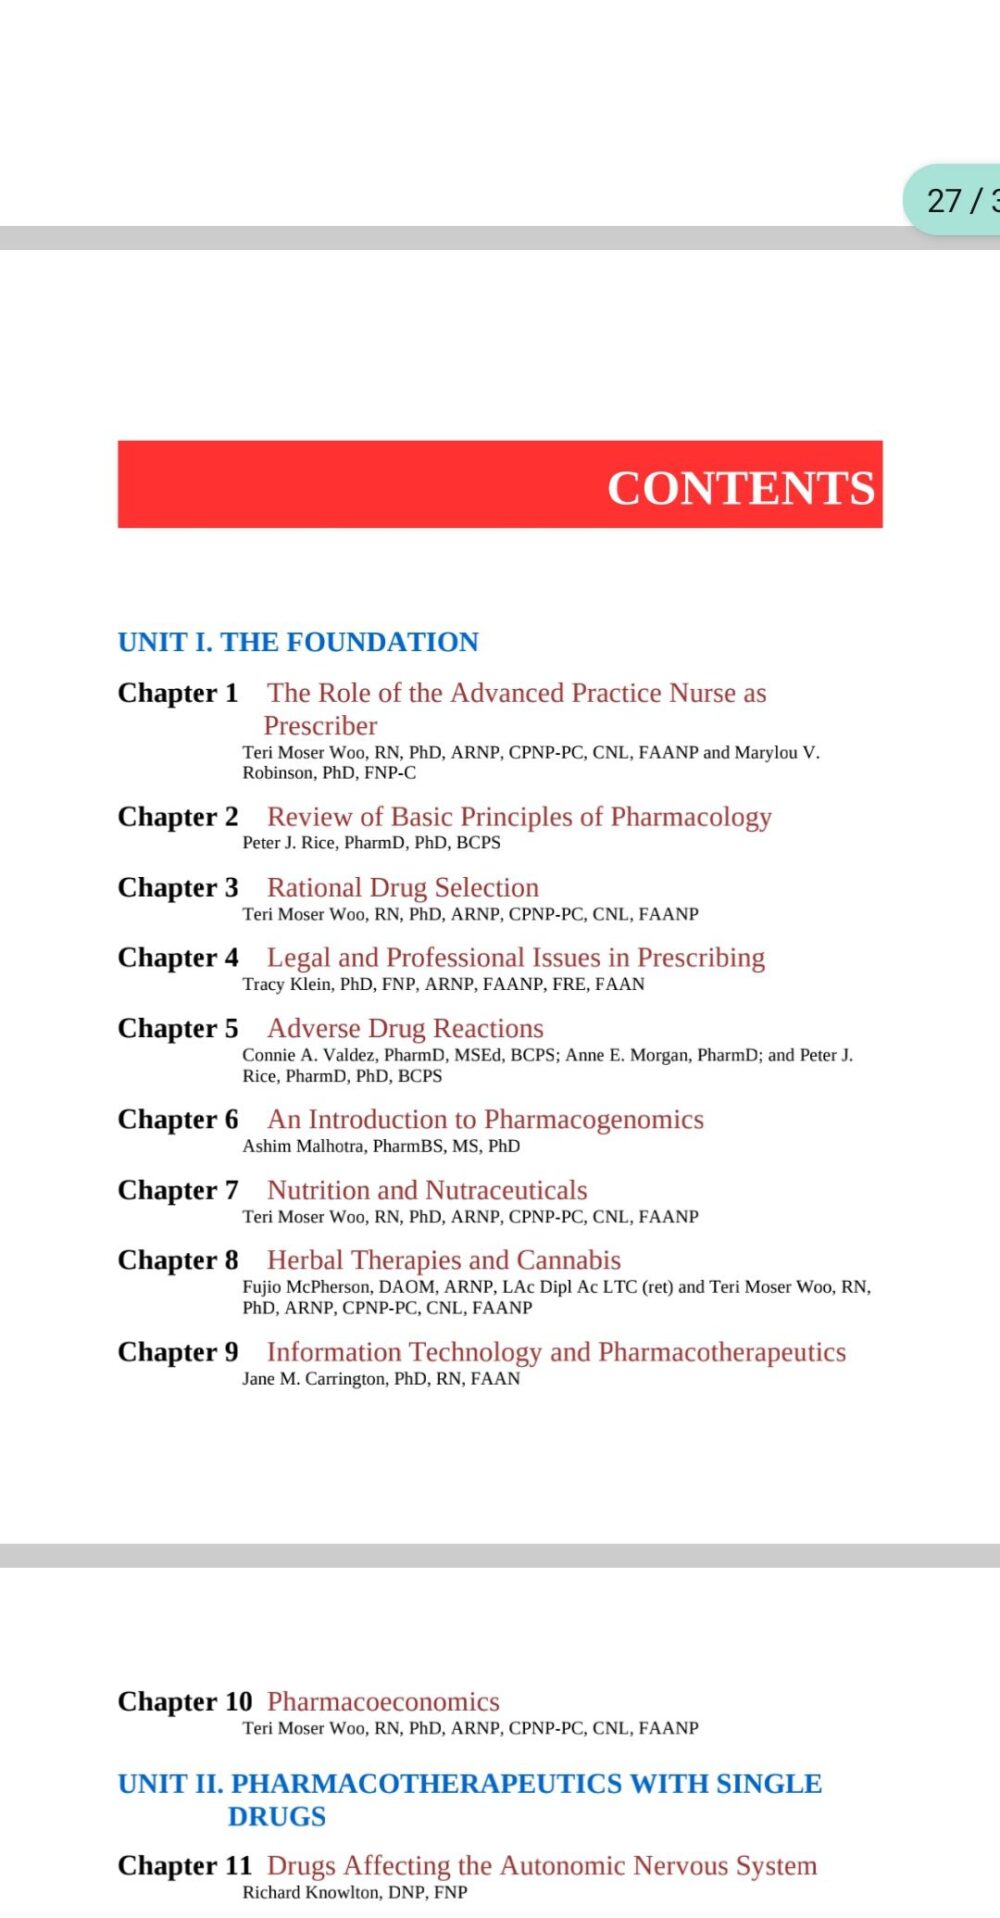 Pharmacotherapeutics for Advanced Practice Nurse Prescribers 5th Edition [Fifth ed/5e]